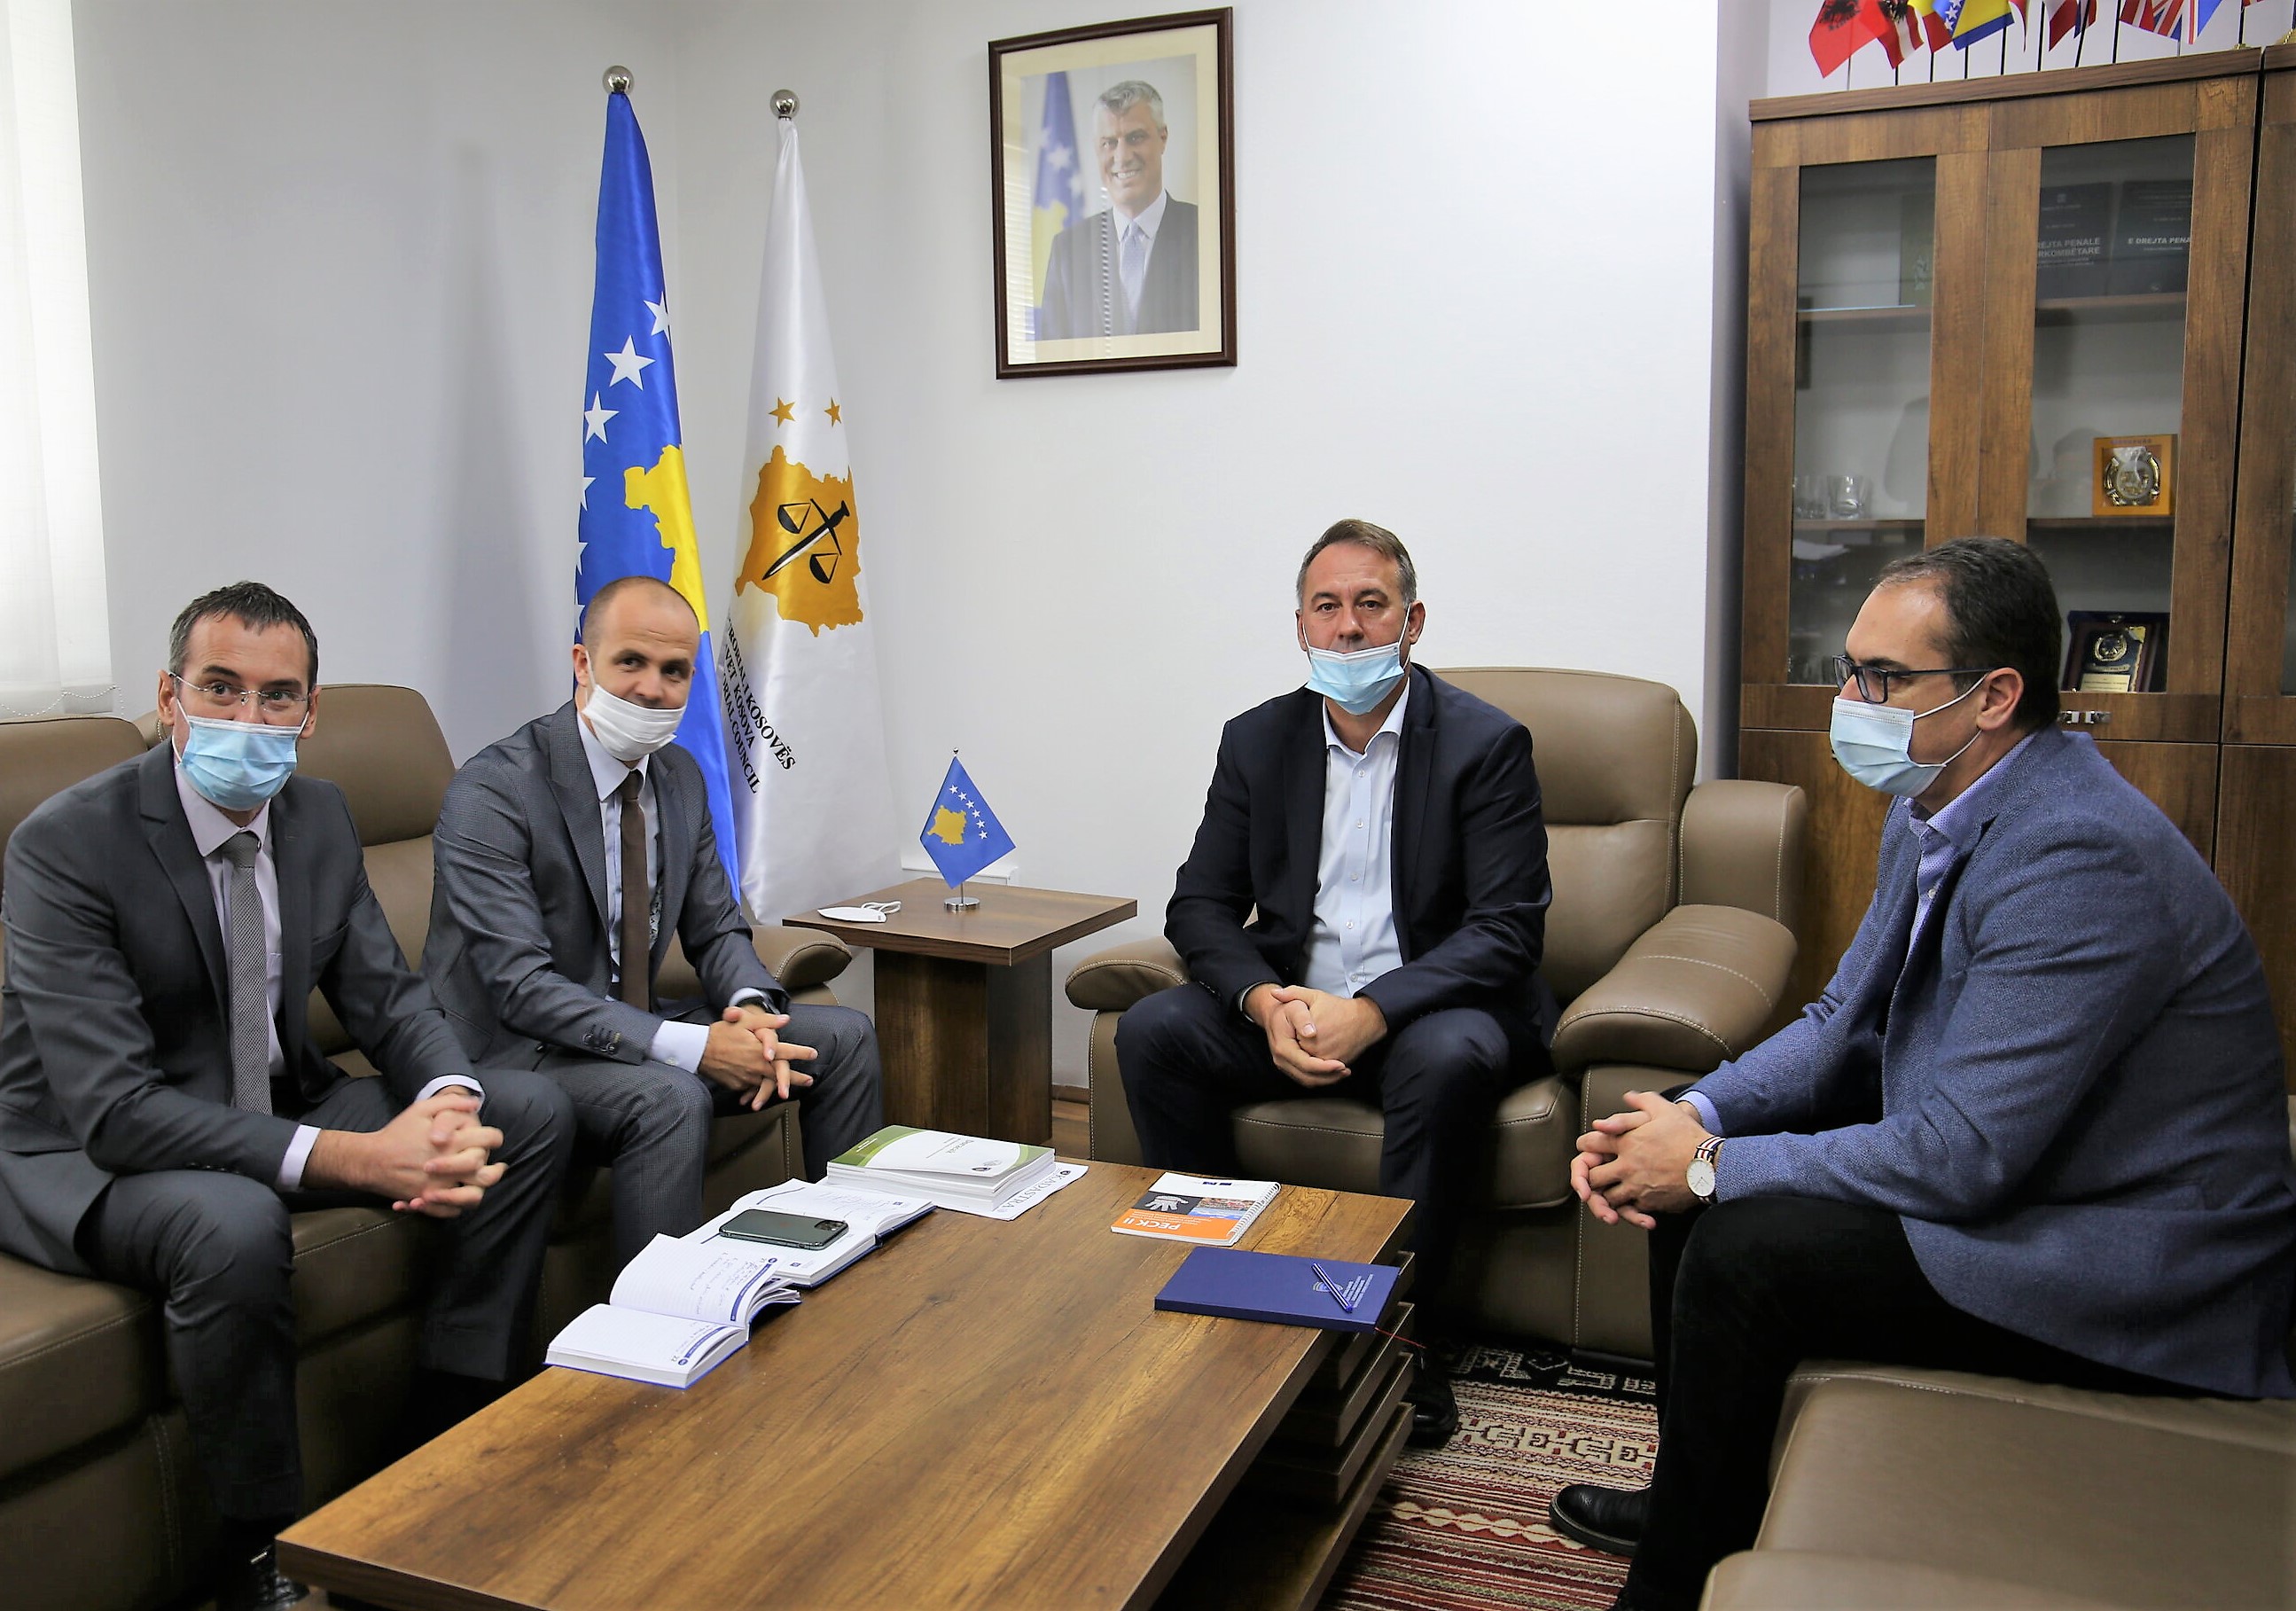 Predsedavajući Hyseni je na sastanku primio izvršnog direktora KAK, gospodina Ahmeti